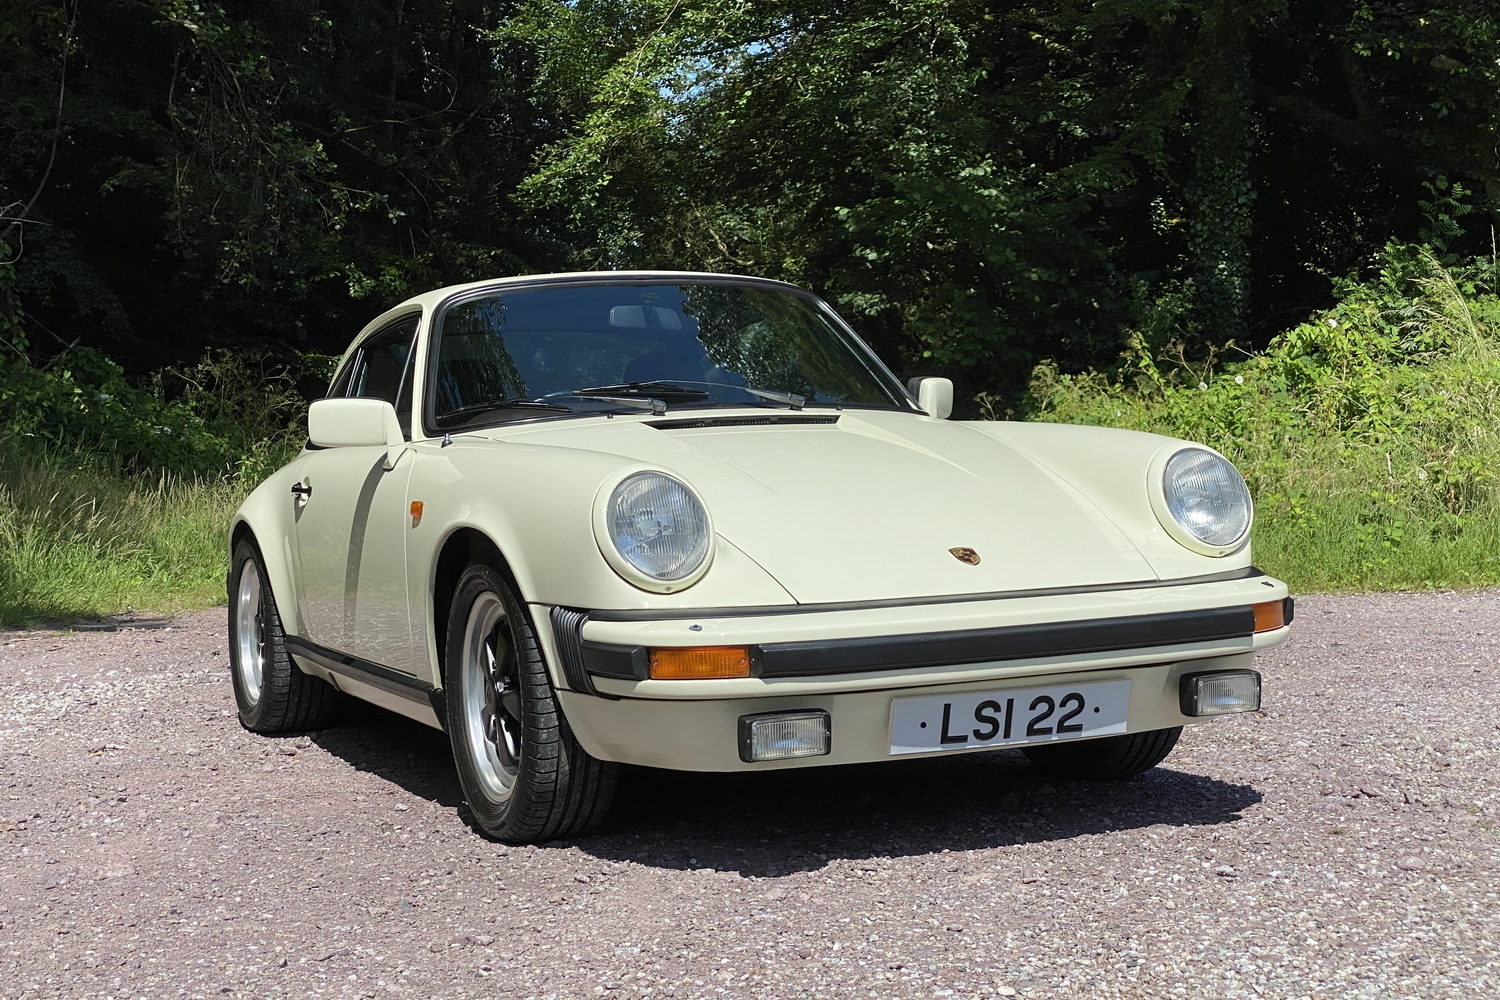 Complete Car Features | We drive Crosbie's 1982 Porsche 911